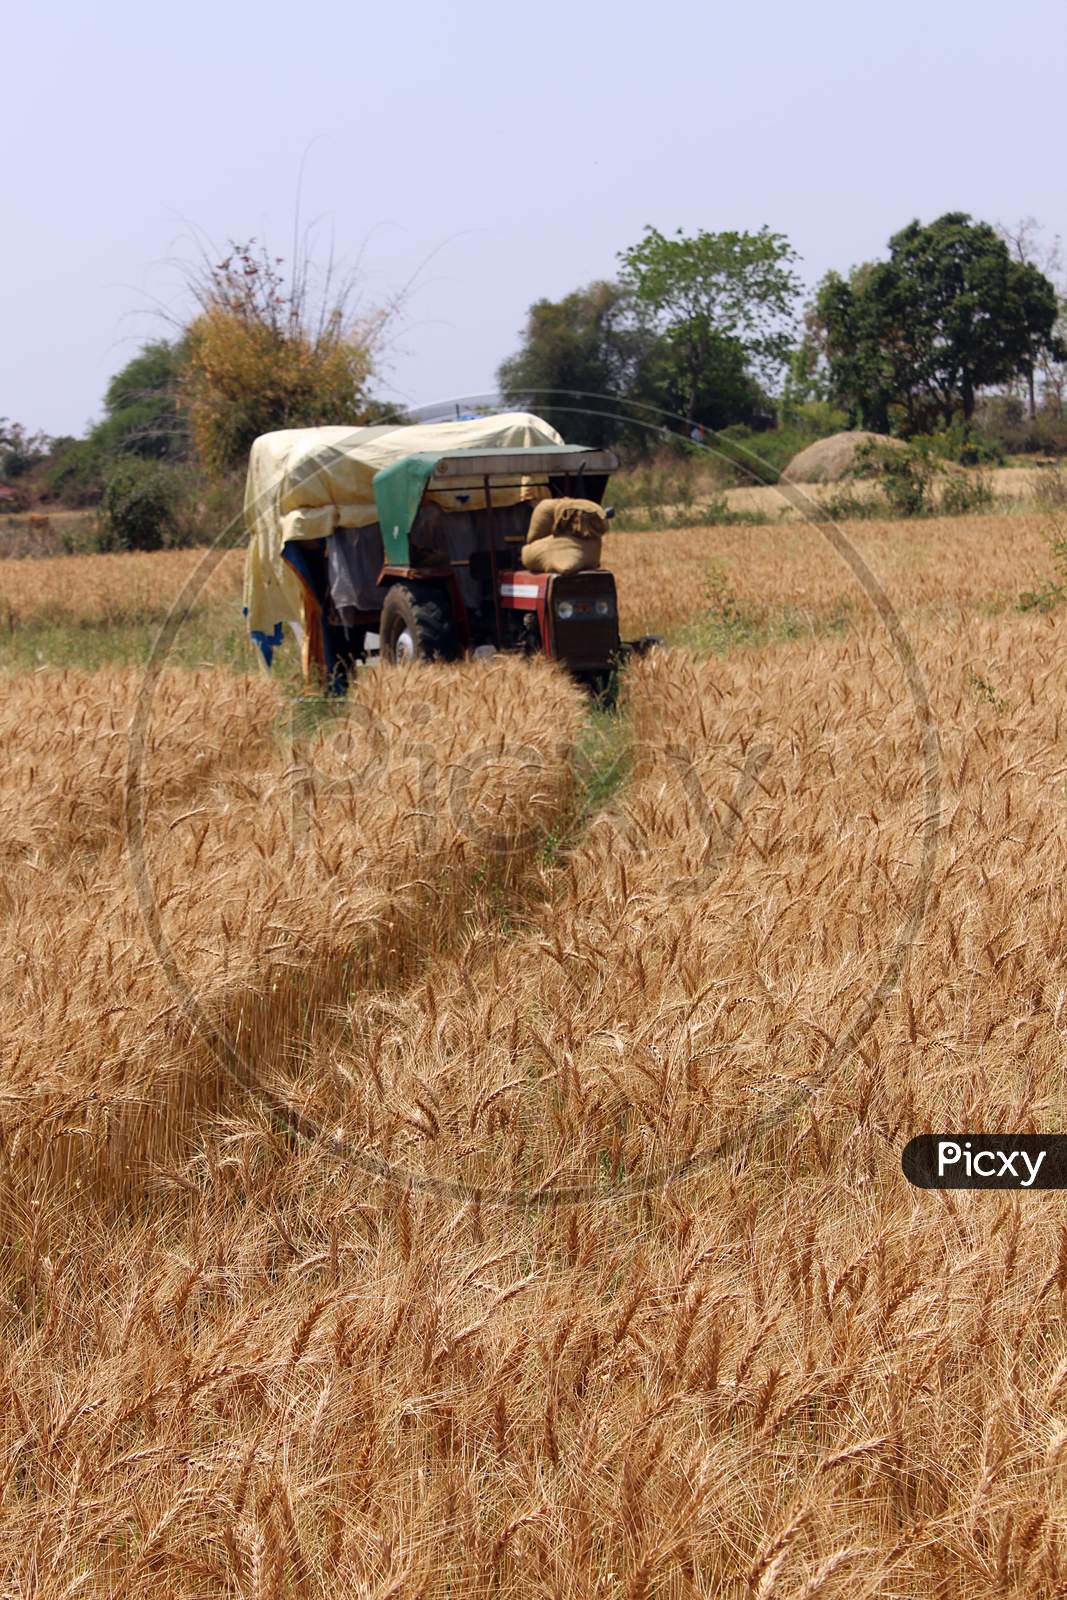 Wheat Crop Field ready to harvest, Maharashtra, India.